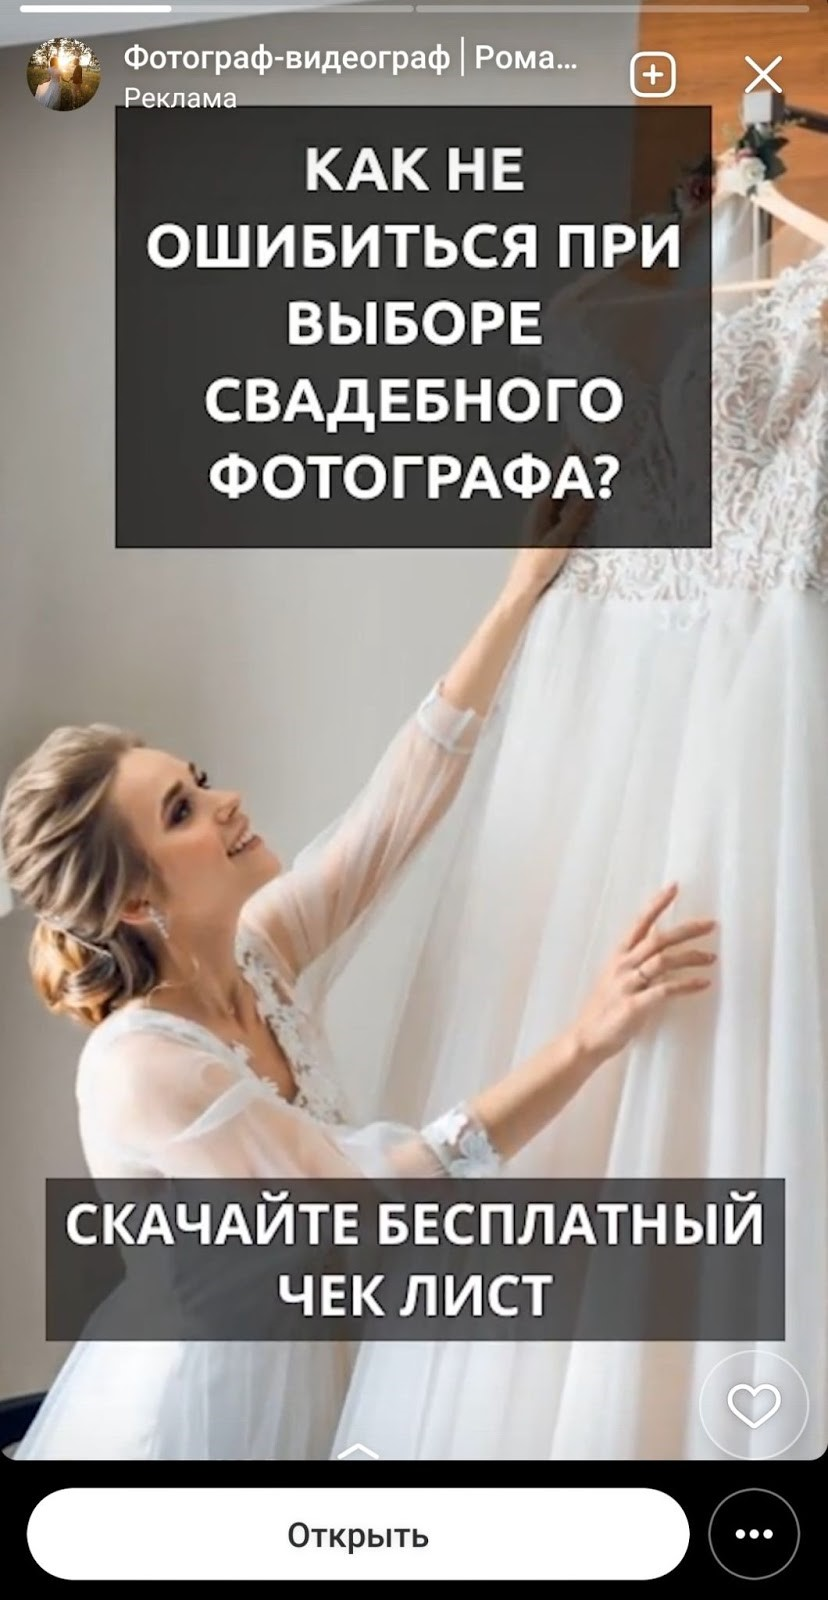 Реклама в истории Вконтакте